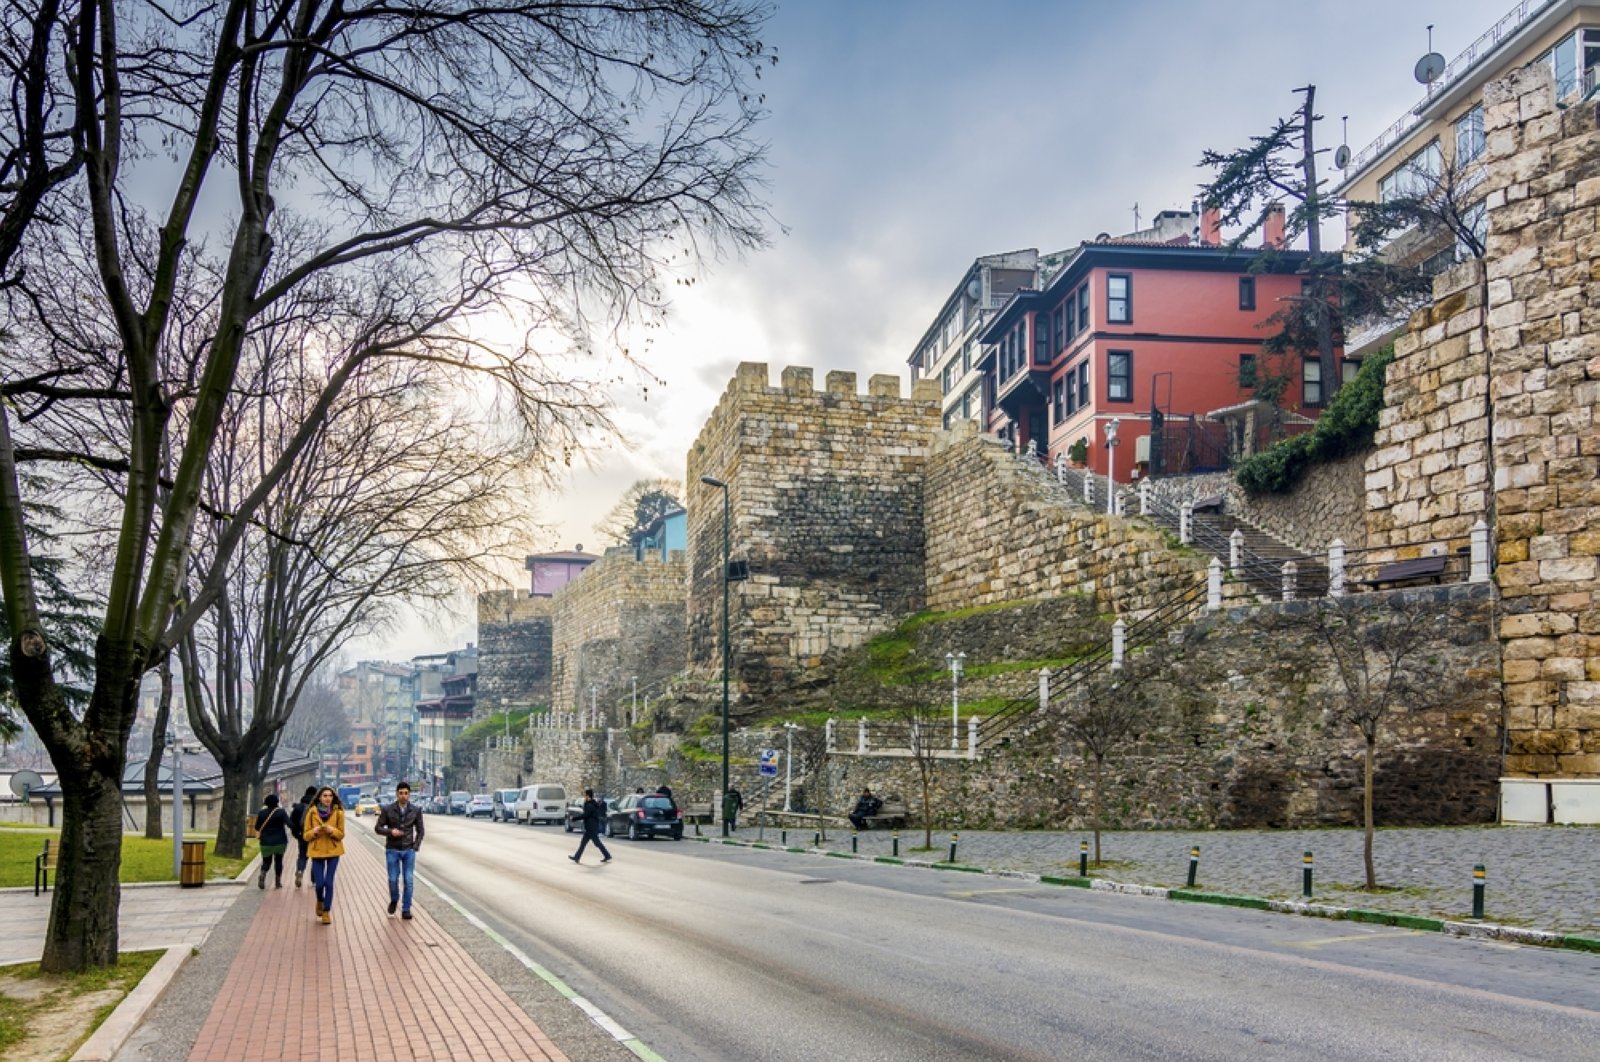 Kunjungan ke Bursa, ibu kota Ottoman yang tak terlupakan: Tip perjalanan dari penduduk setempat